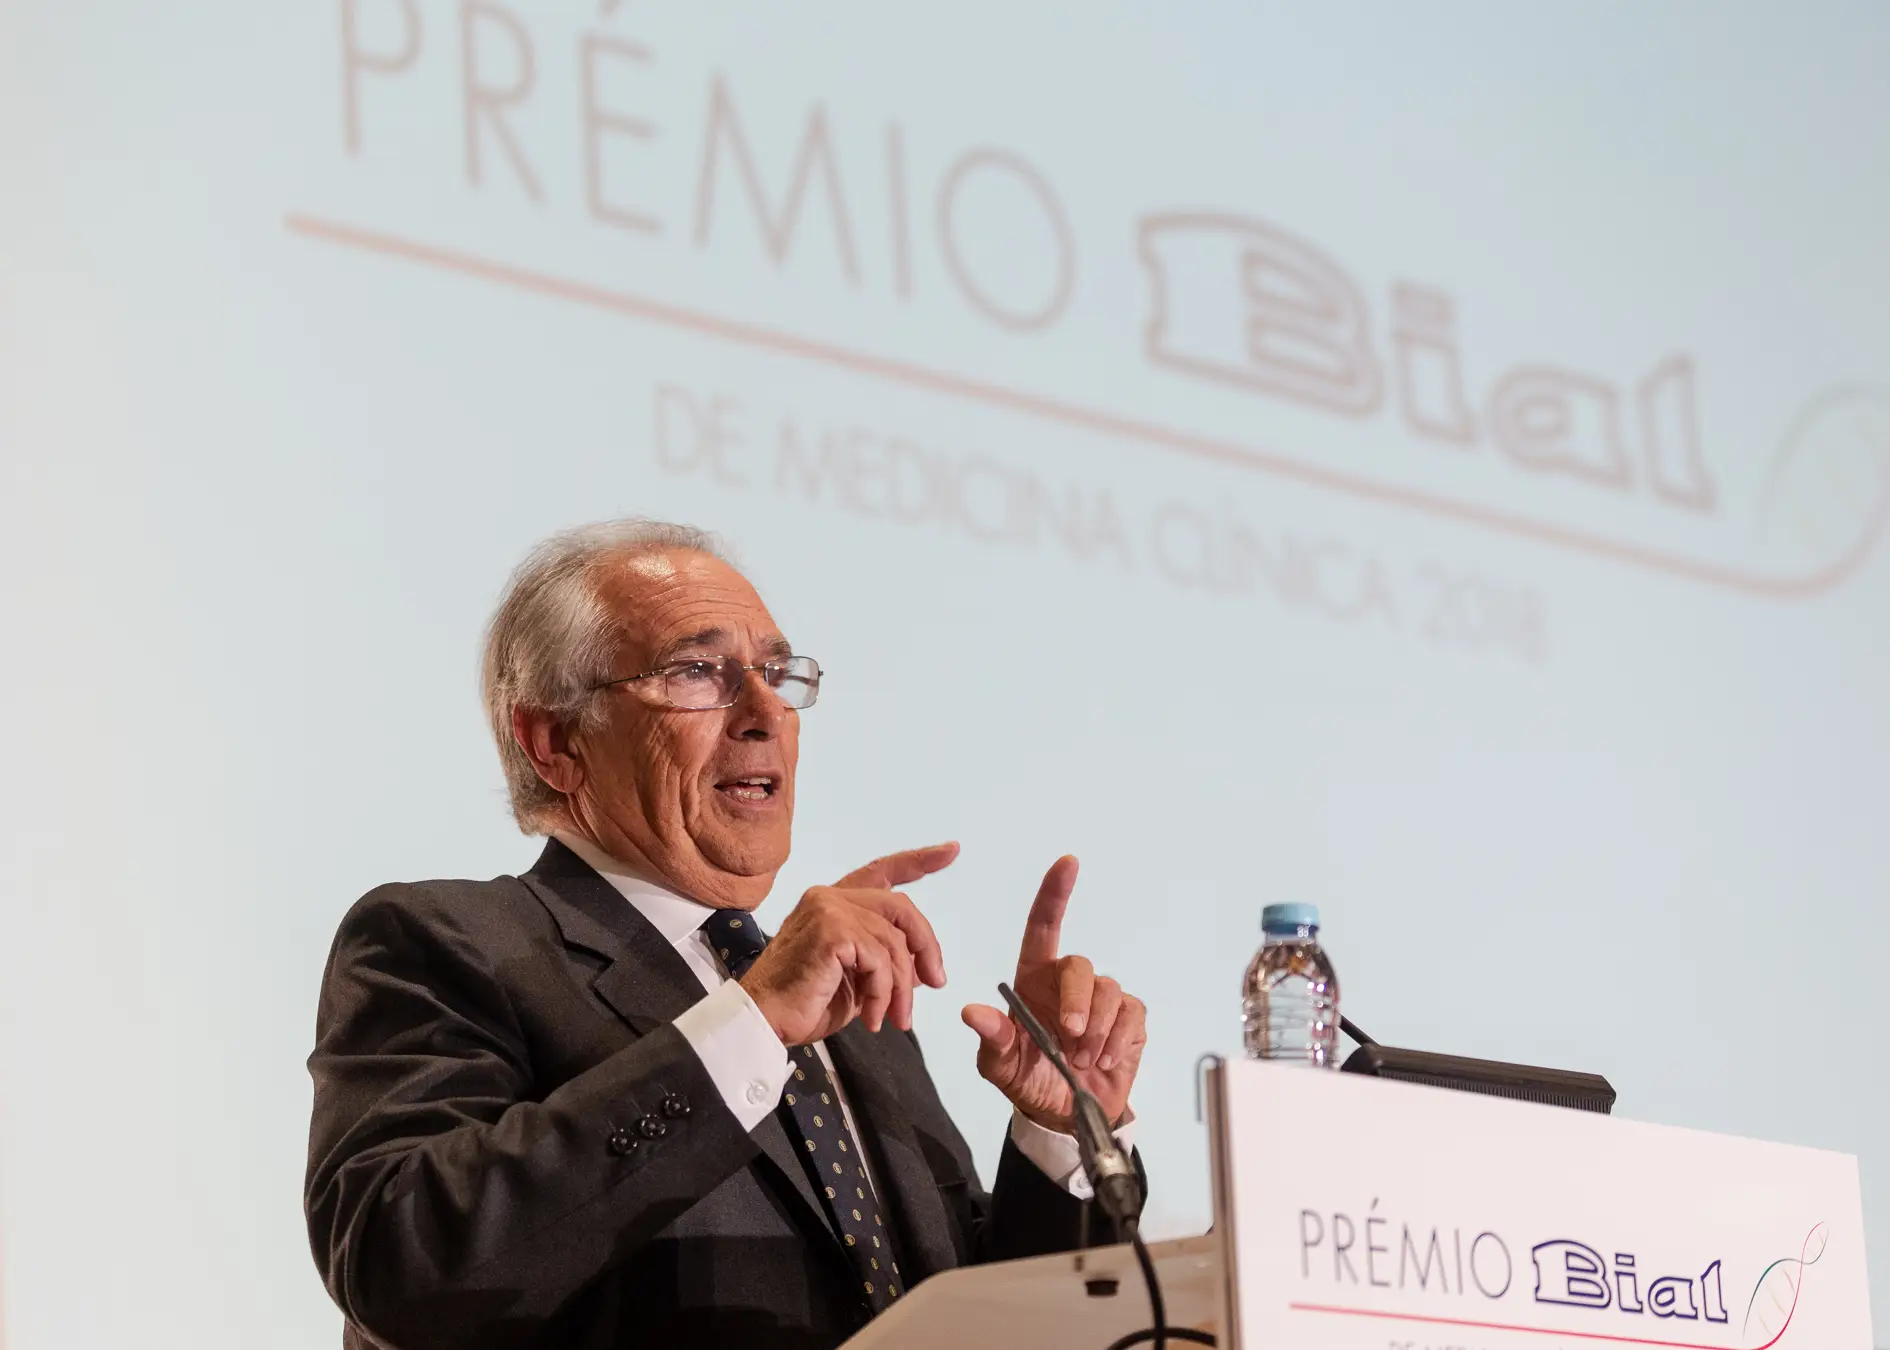 Manuel Sobrinho Simões, patologista e professor, participa no júri da iniciativa desde 2006